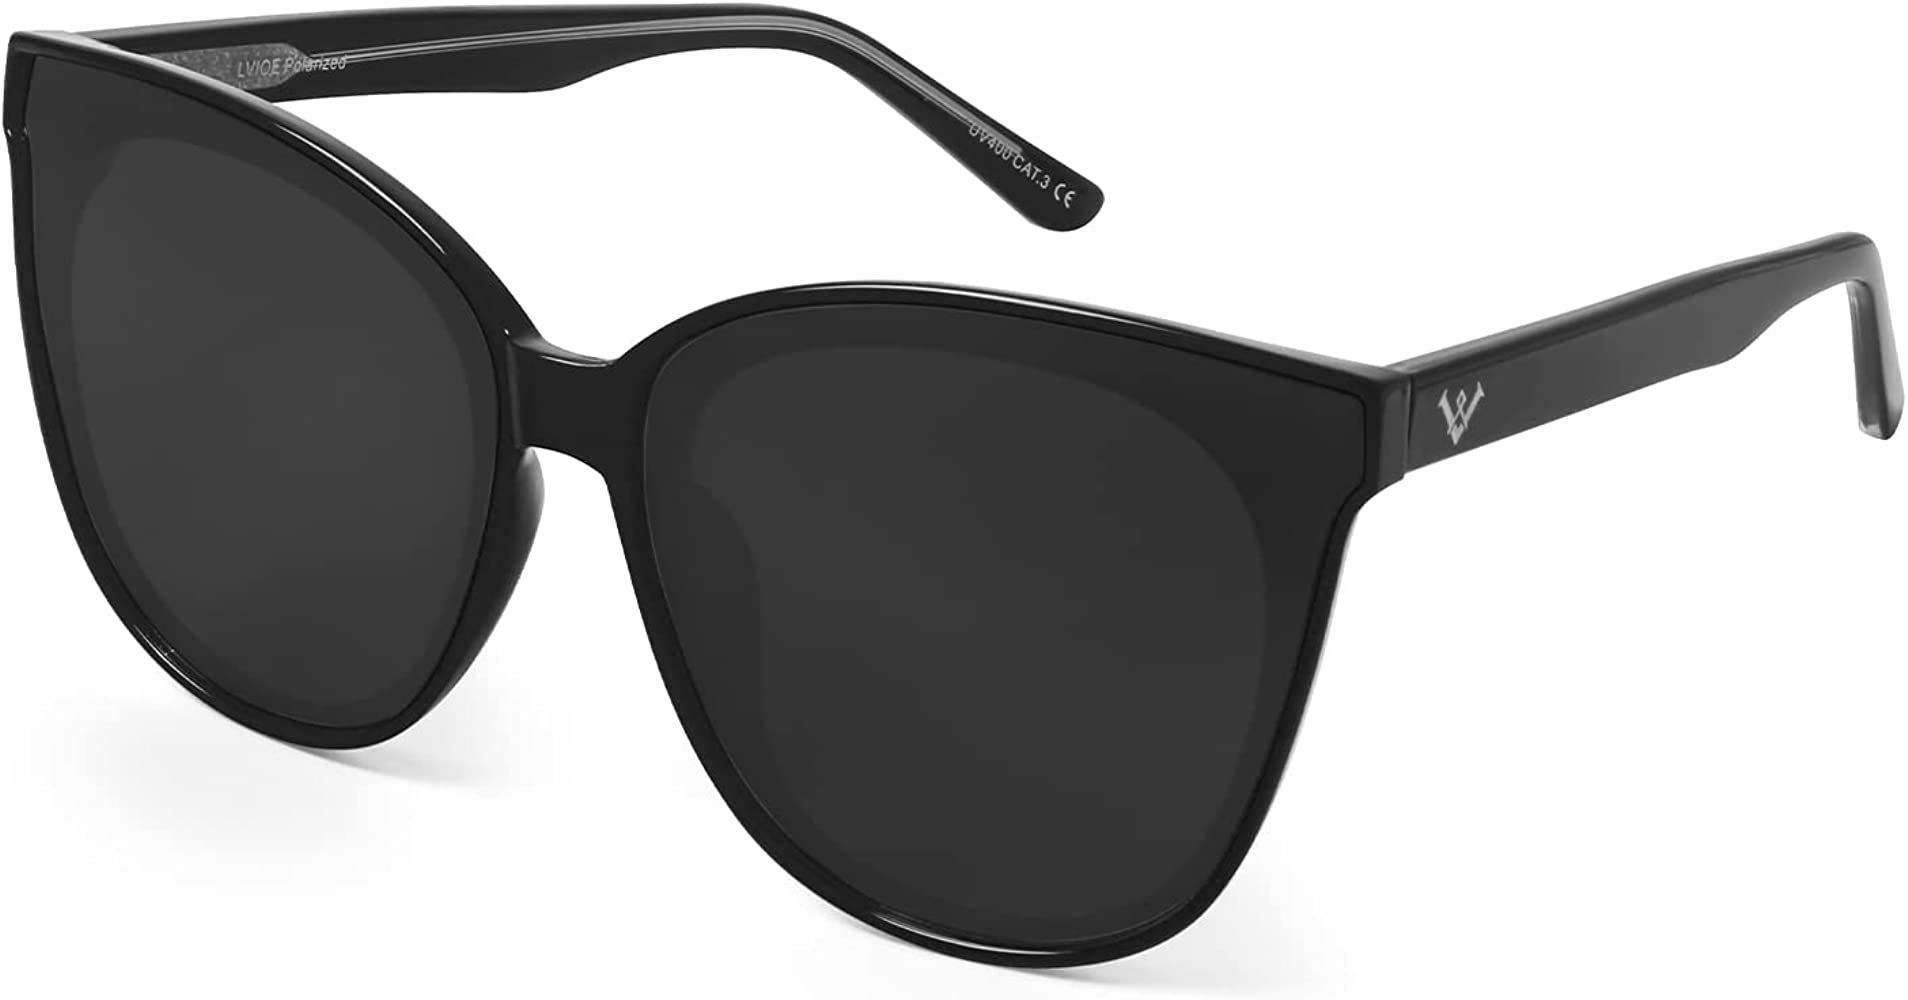 LVIOE Oversized Polarized Sunglasses for Women Trendy Large Cat Eye UV Protection Shade LS1627 | Amazon (US)